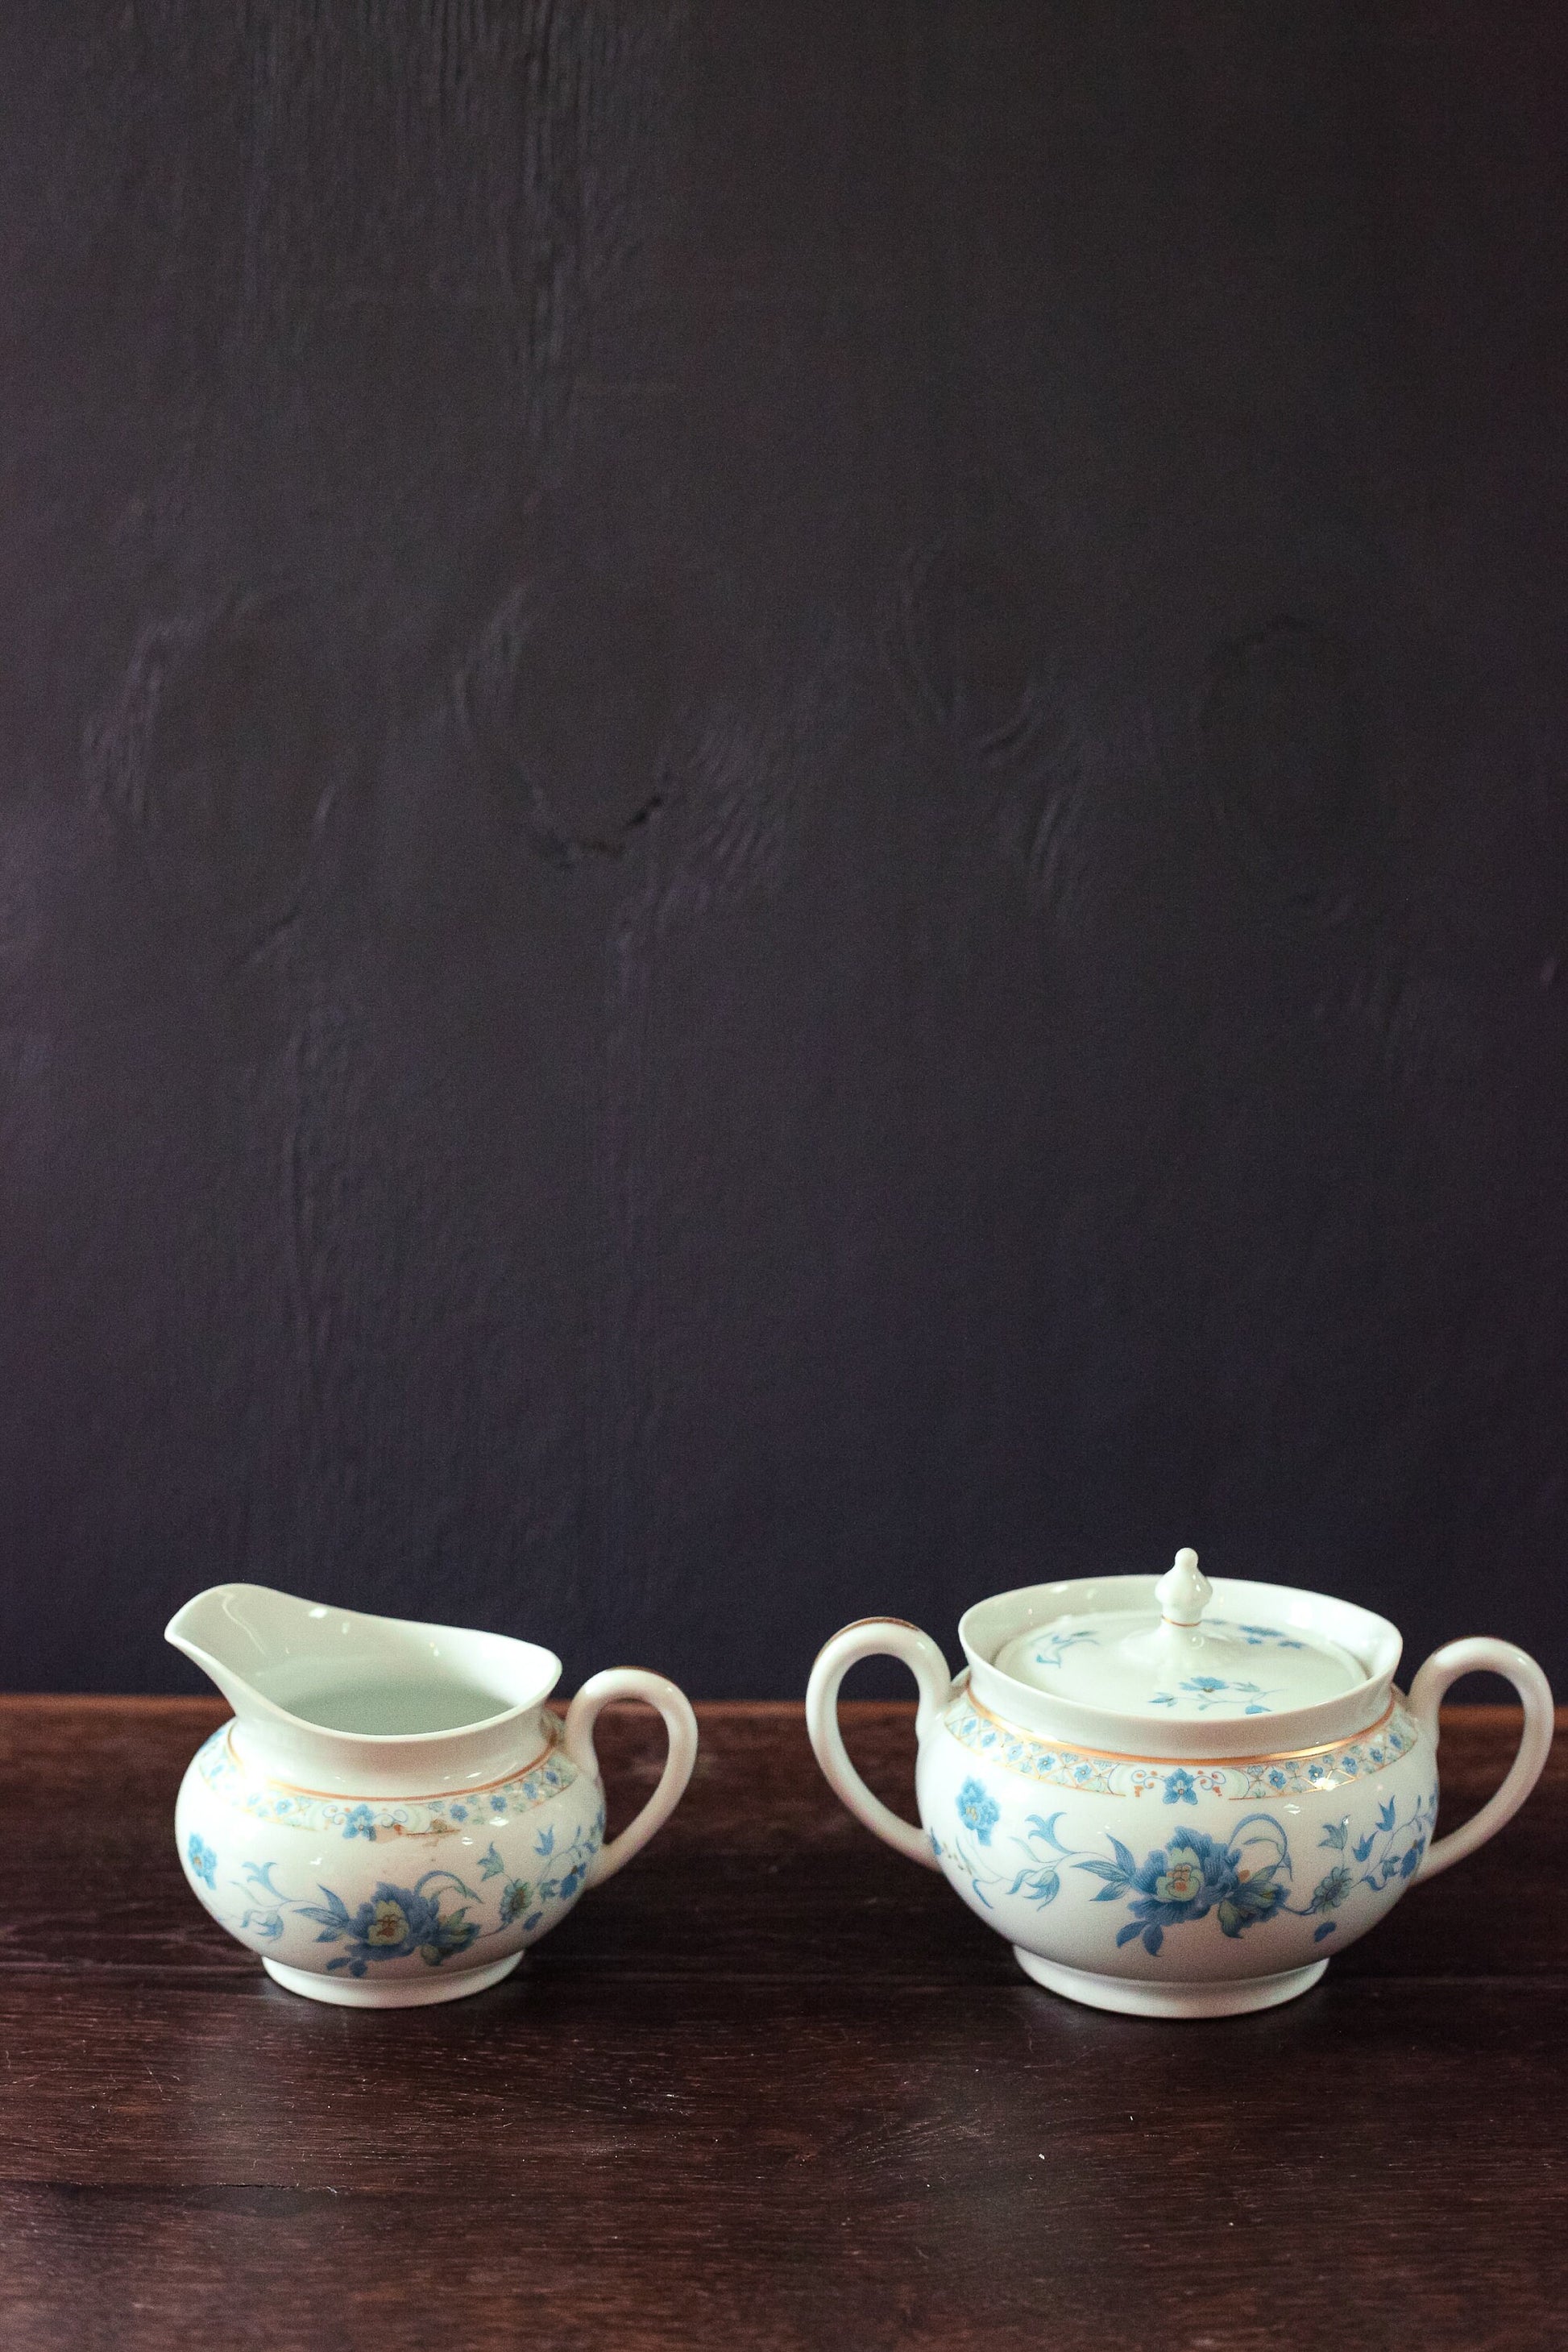 Nankin Cream & Sugar Set with Blue White Gold Floral Design - Antique Haviland Limoges Porcelain Cream and Sugar